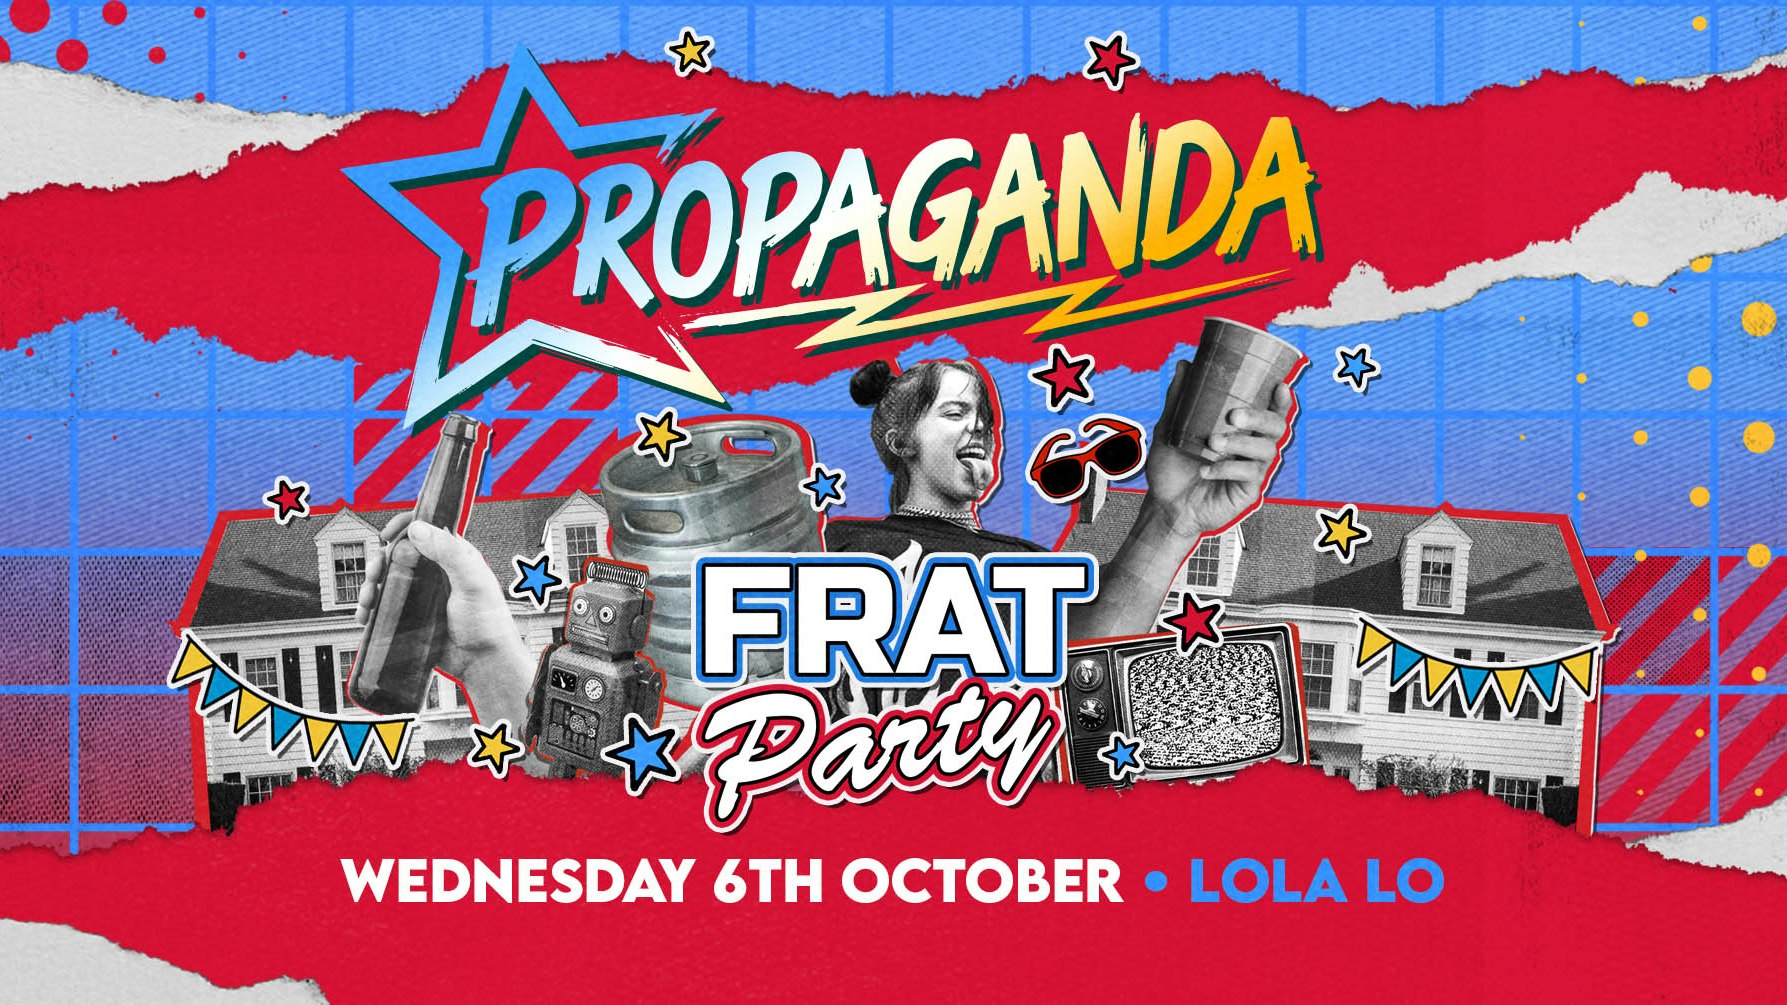 Propaganda Cambridge – Frat Party at Lola Lo!